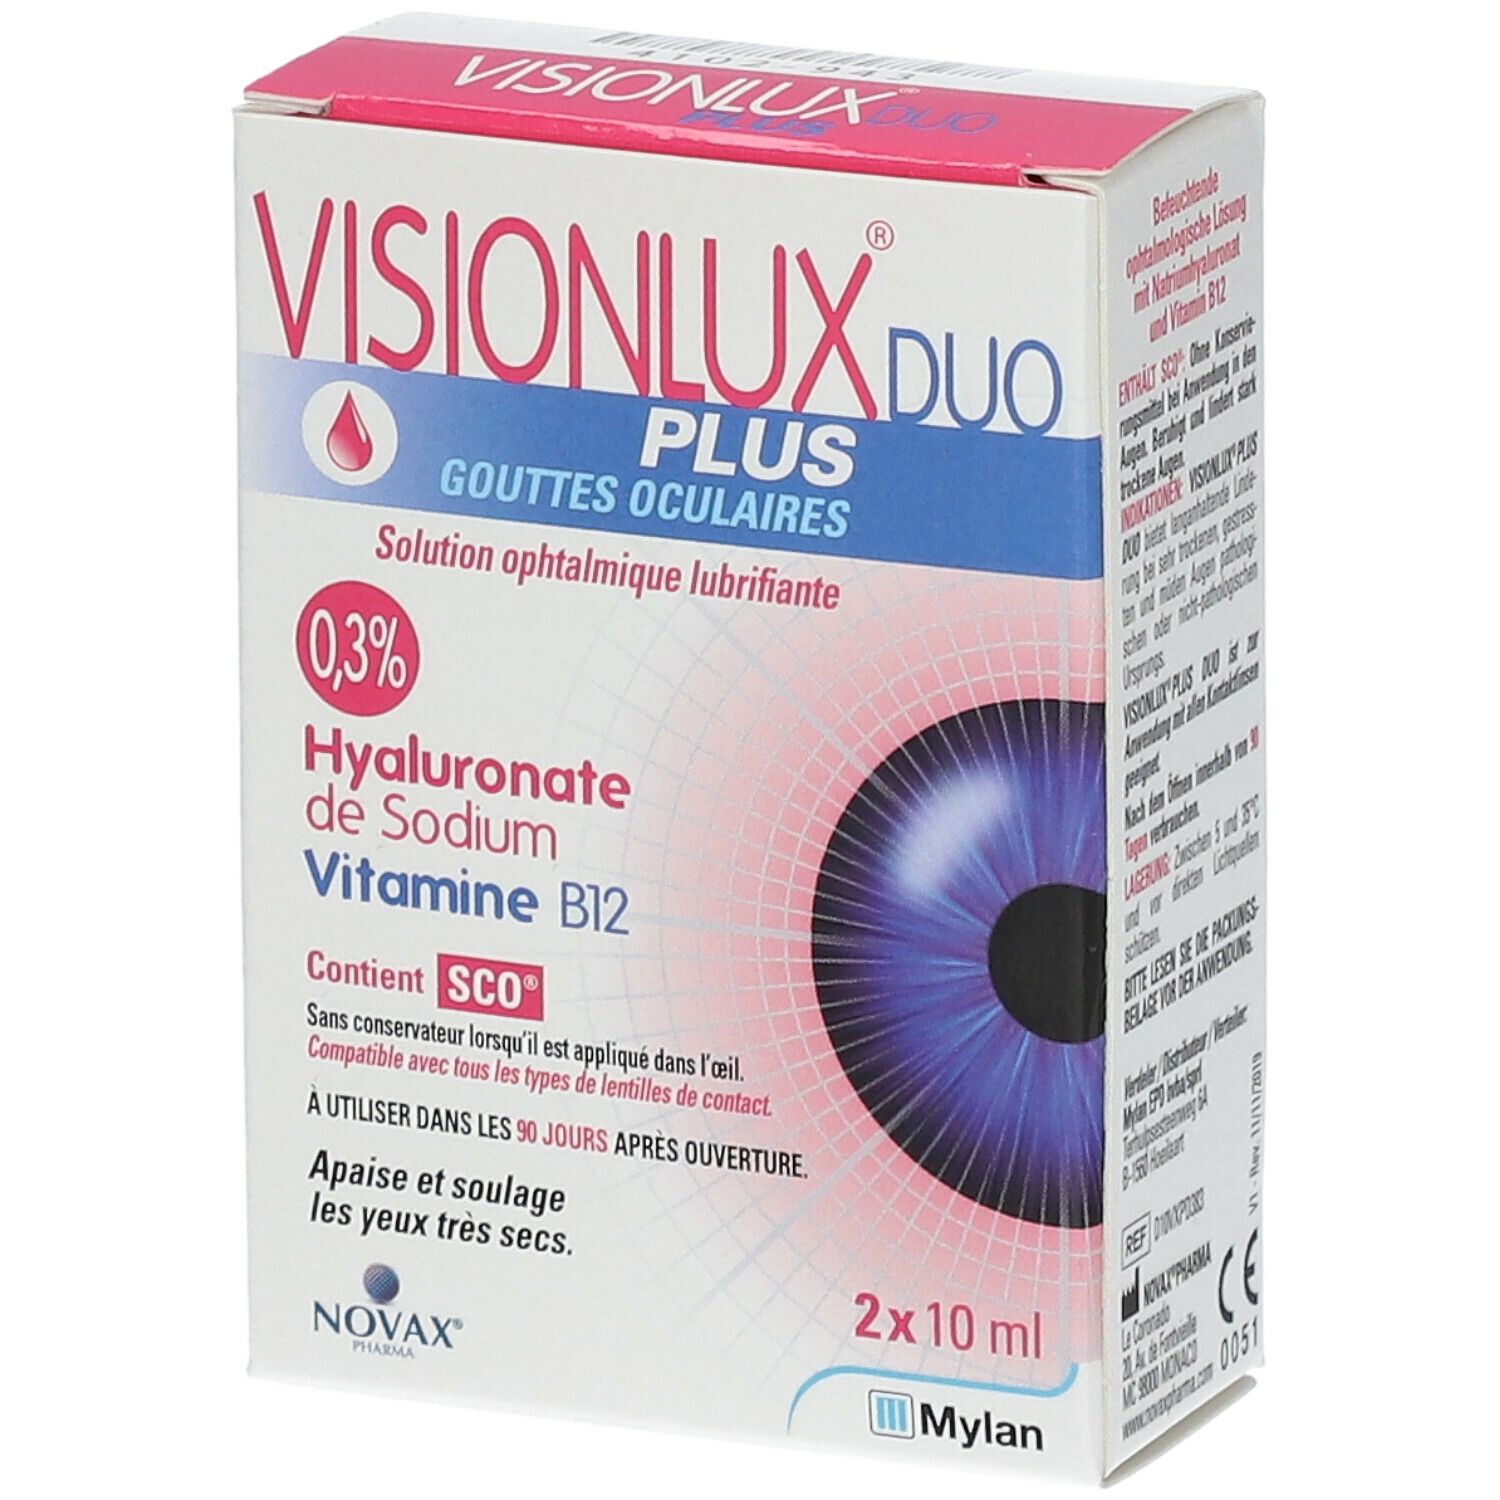 Visionlux® Plus DUO Gouttes oculaires